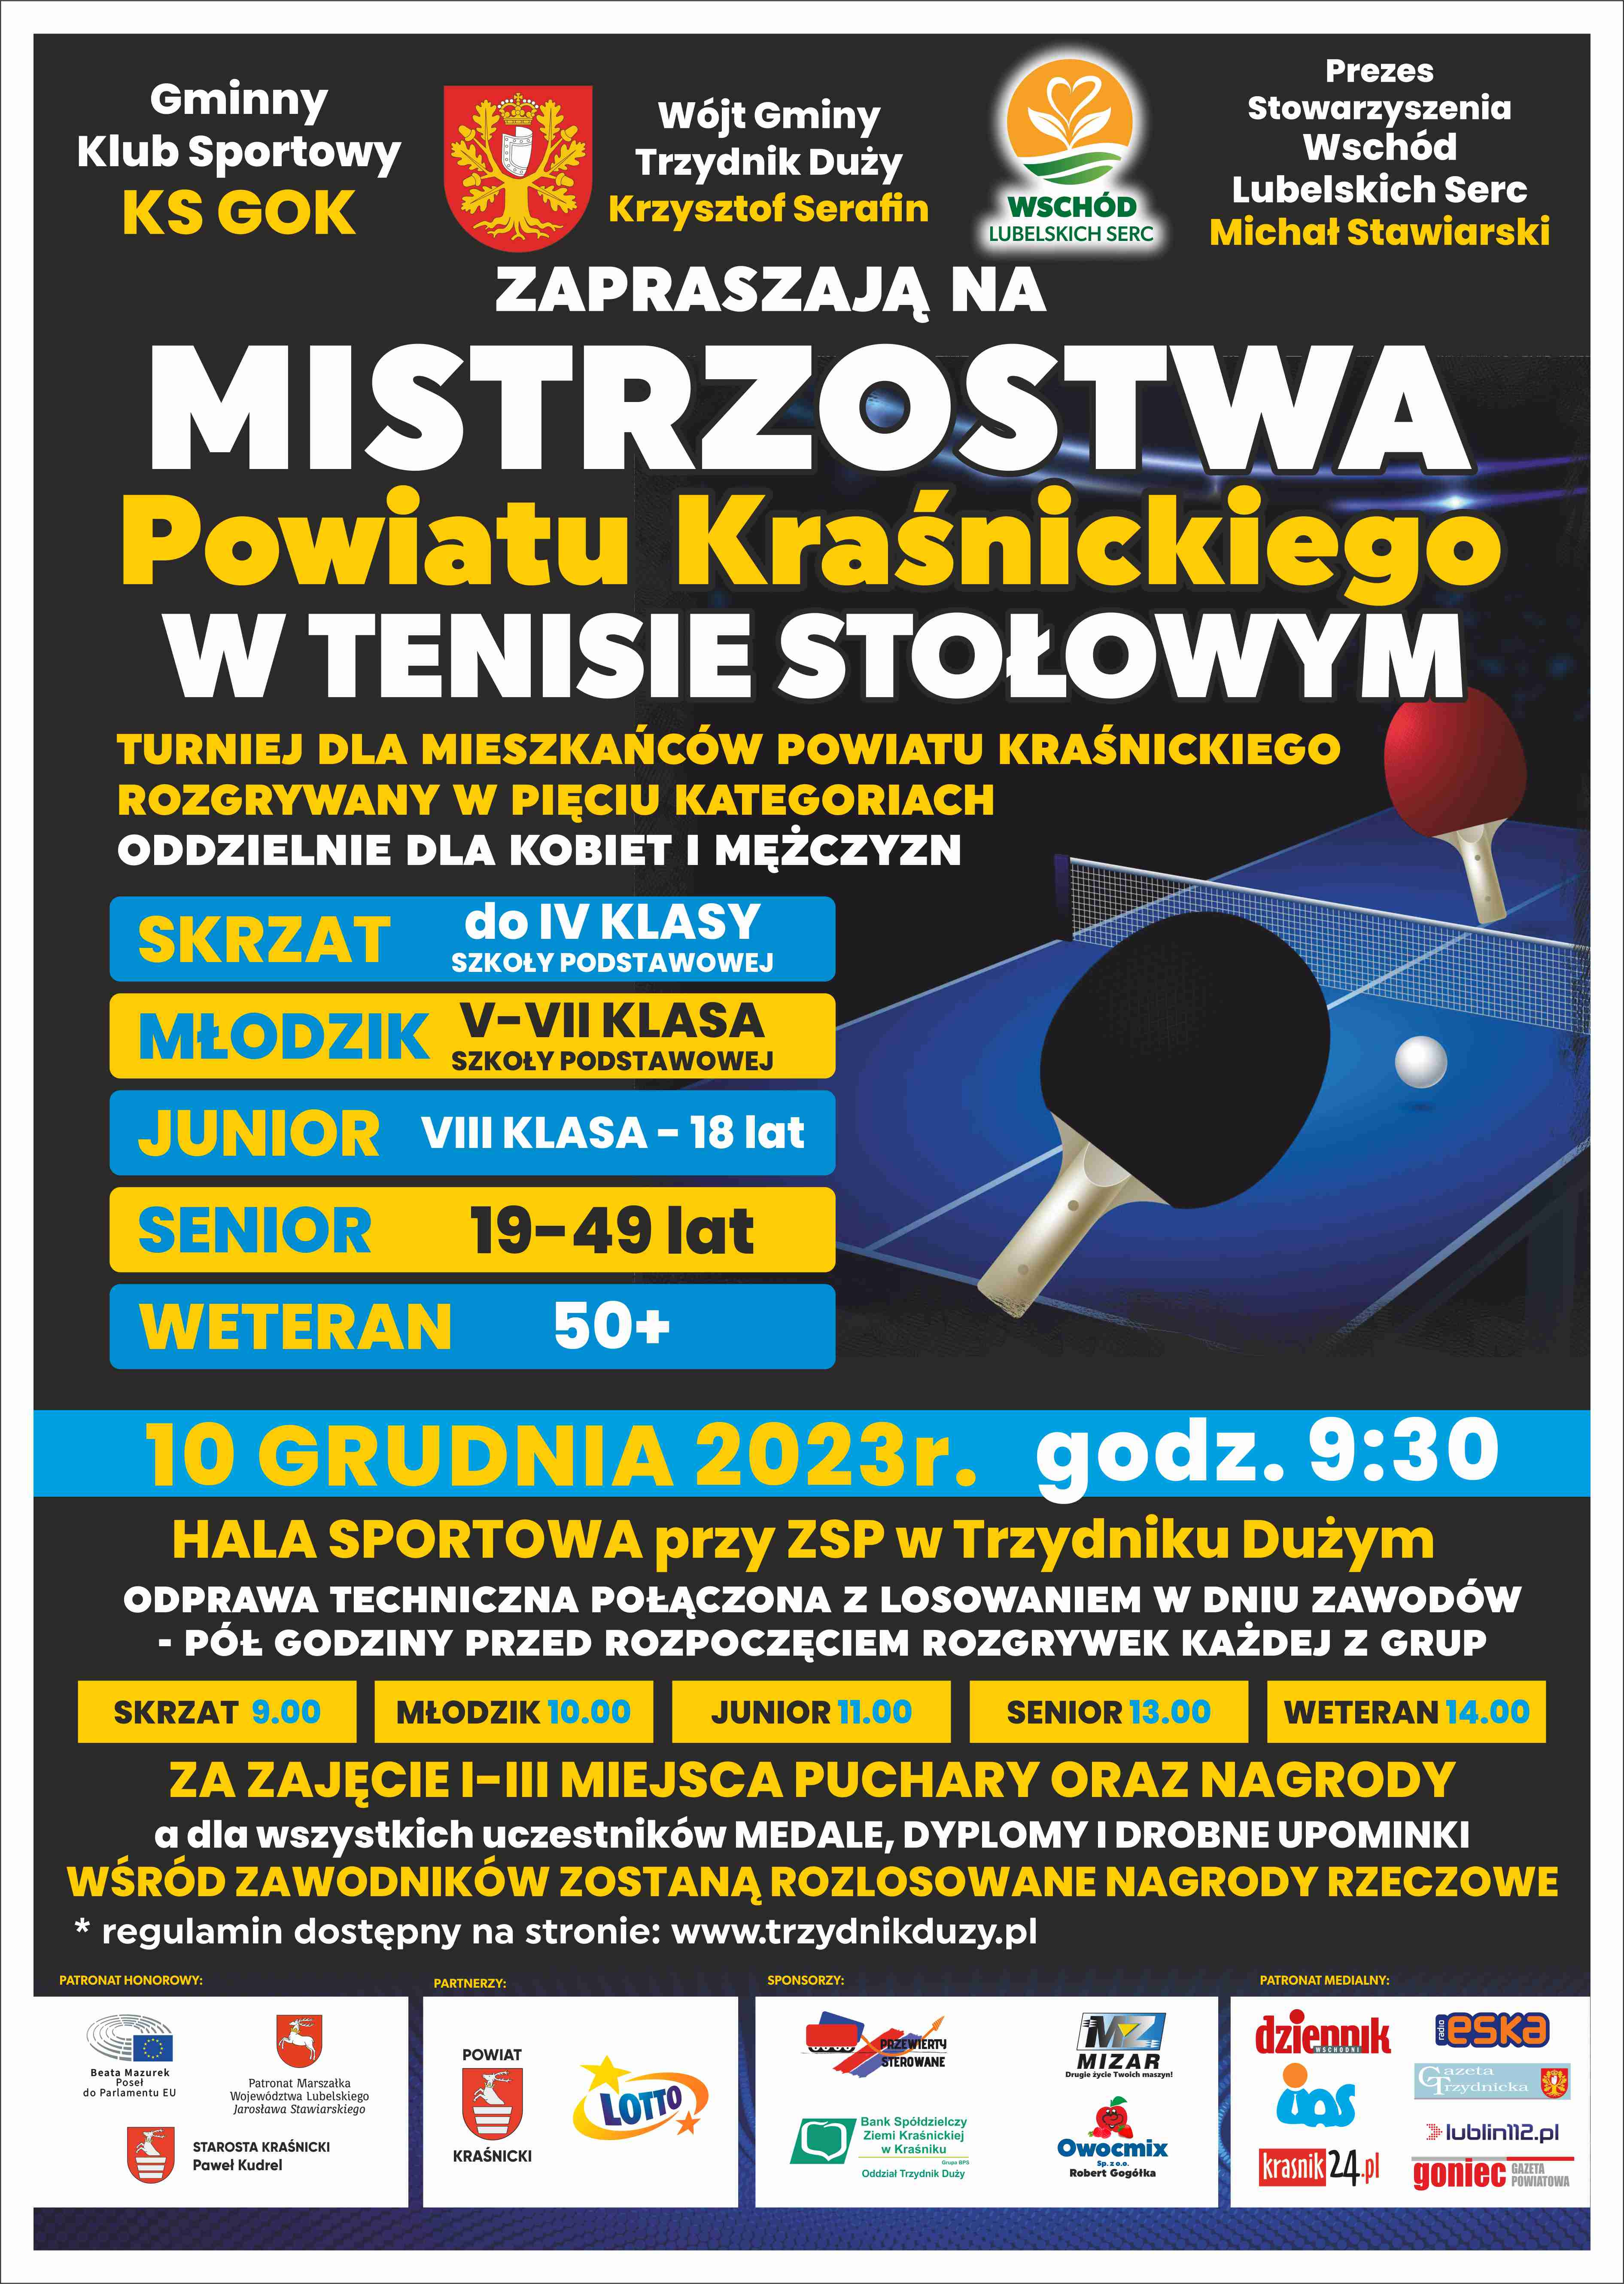 Mistrzostwa Powiatu Kraśnickiego w Tenisie Stołowym - zdjęcie